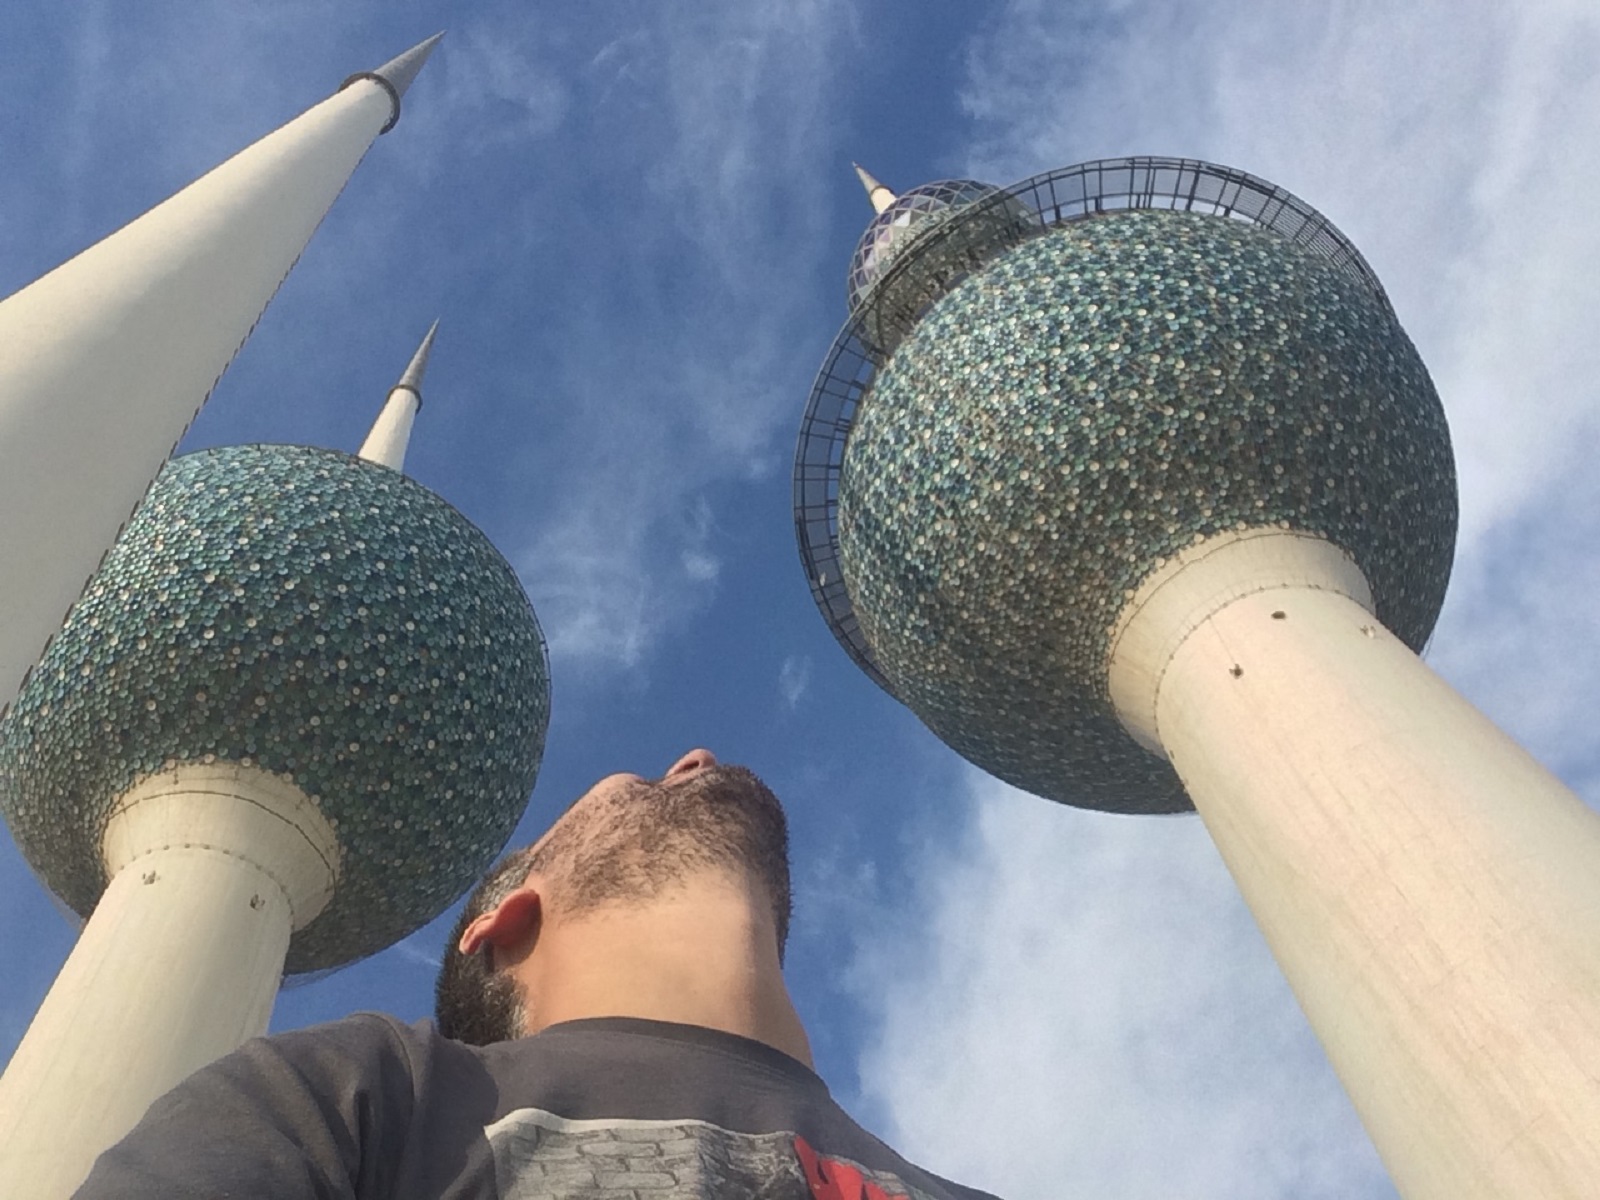 Kuvajt, Bahrajn, Katar, Spojené arabské emiráty, Omán – cestovateľské rady, tipy a itinerár